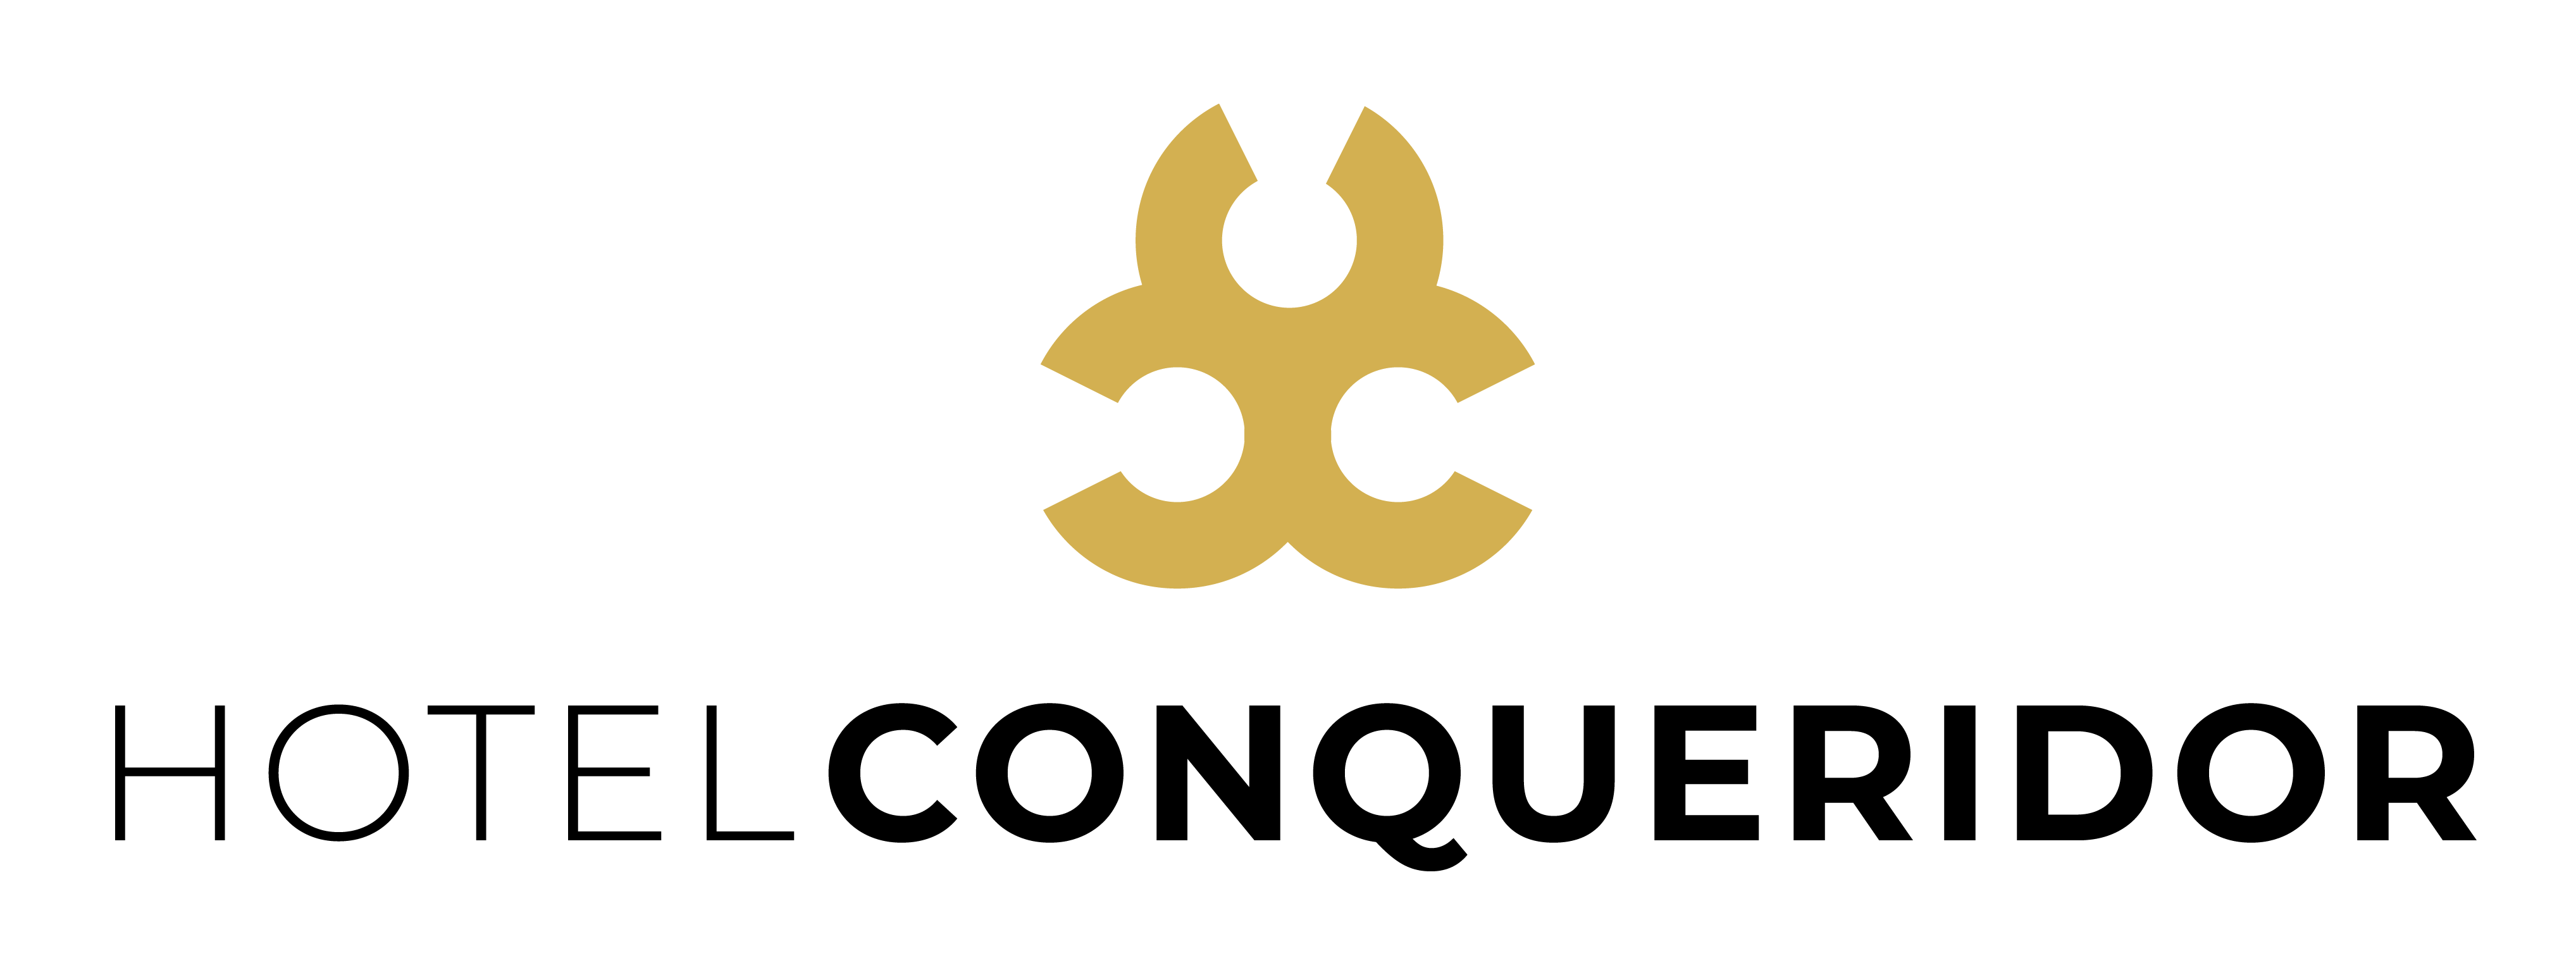 Conqueridor_Logotipo